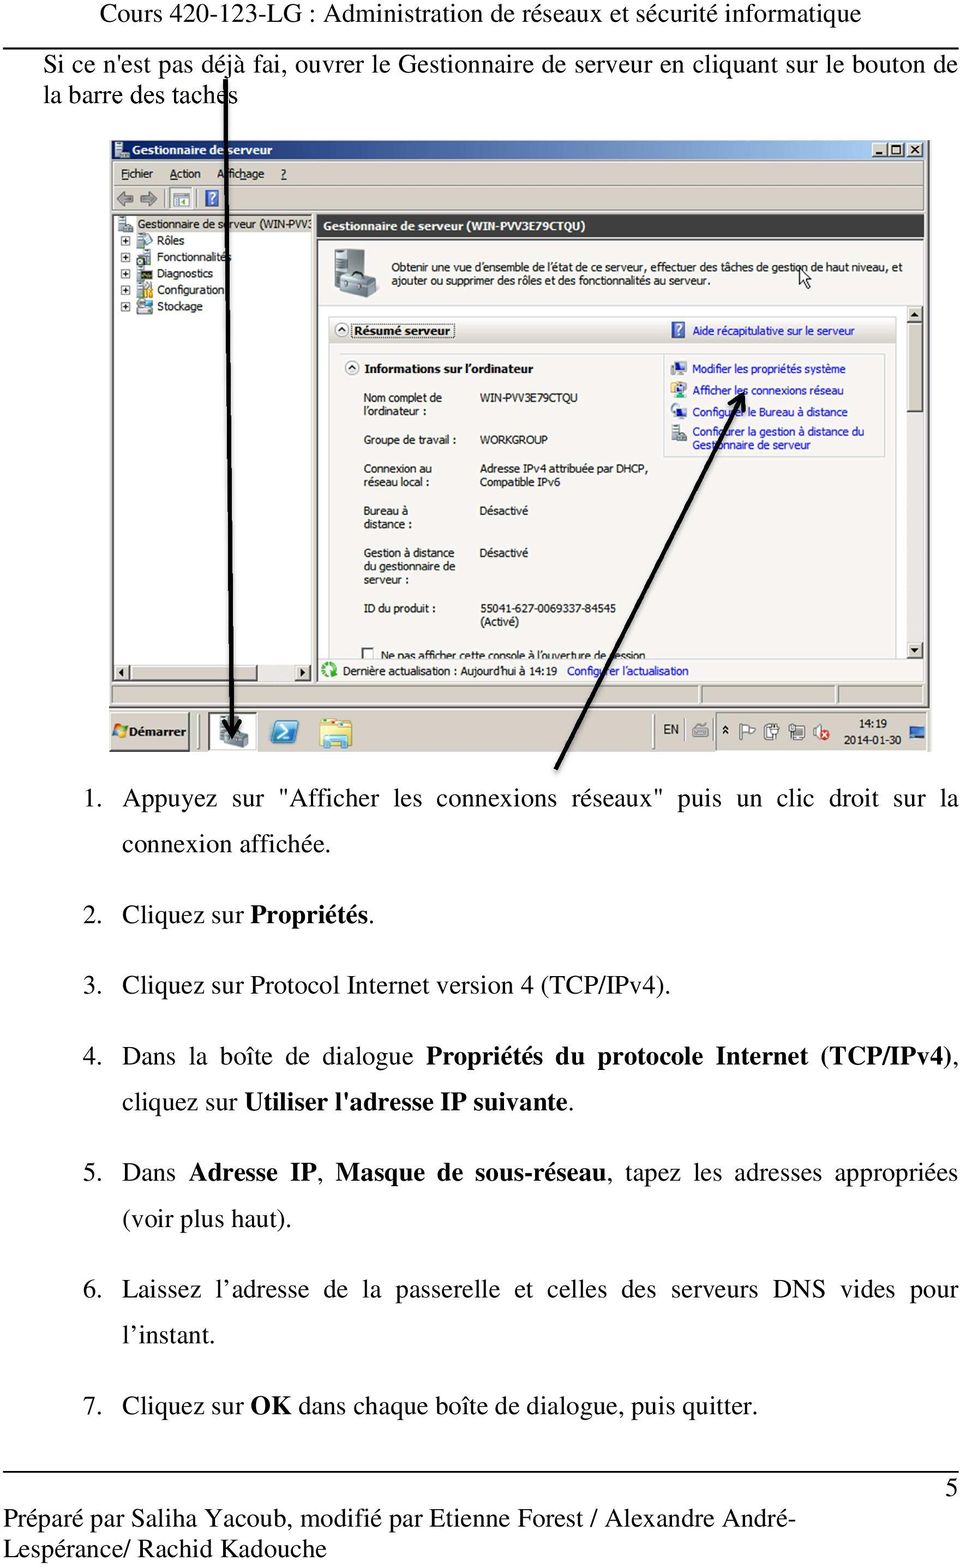 Cliquez sur Protocol Internet version 4 (TCP/IPv4). 4. Dans la boîte de dialogue Propriétés du protocole Internet (TCP/IPv4), cliquez sur Utiliser l'adresse IP suivante.